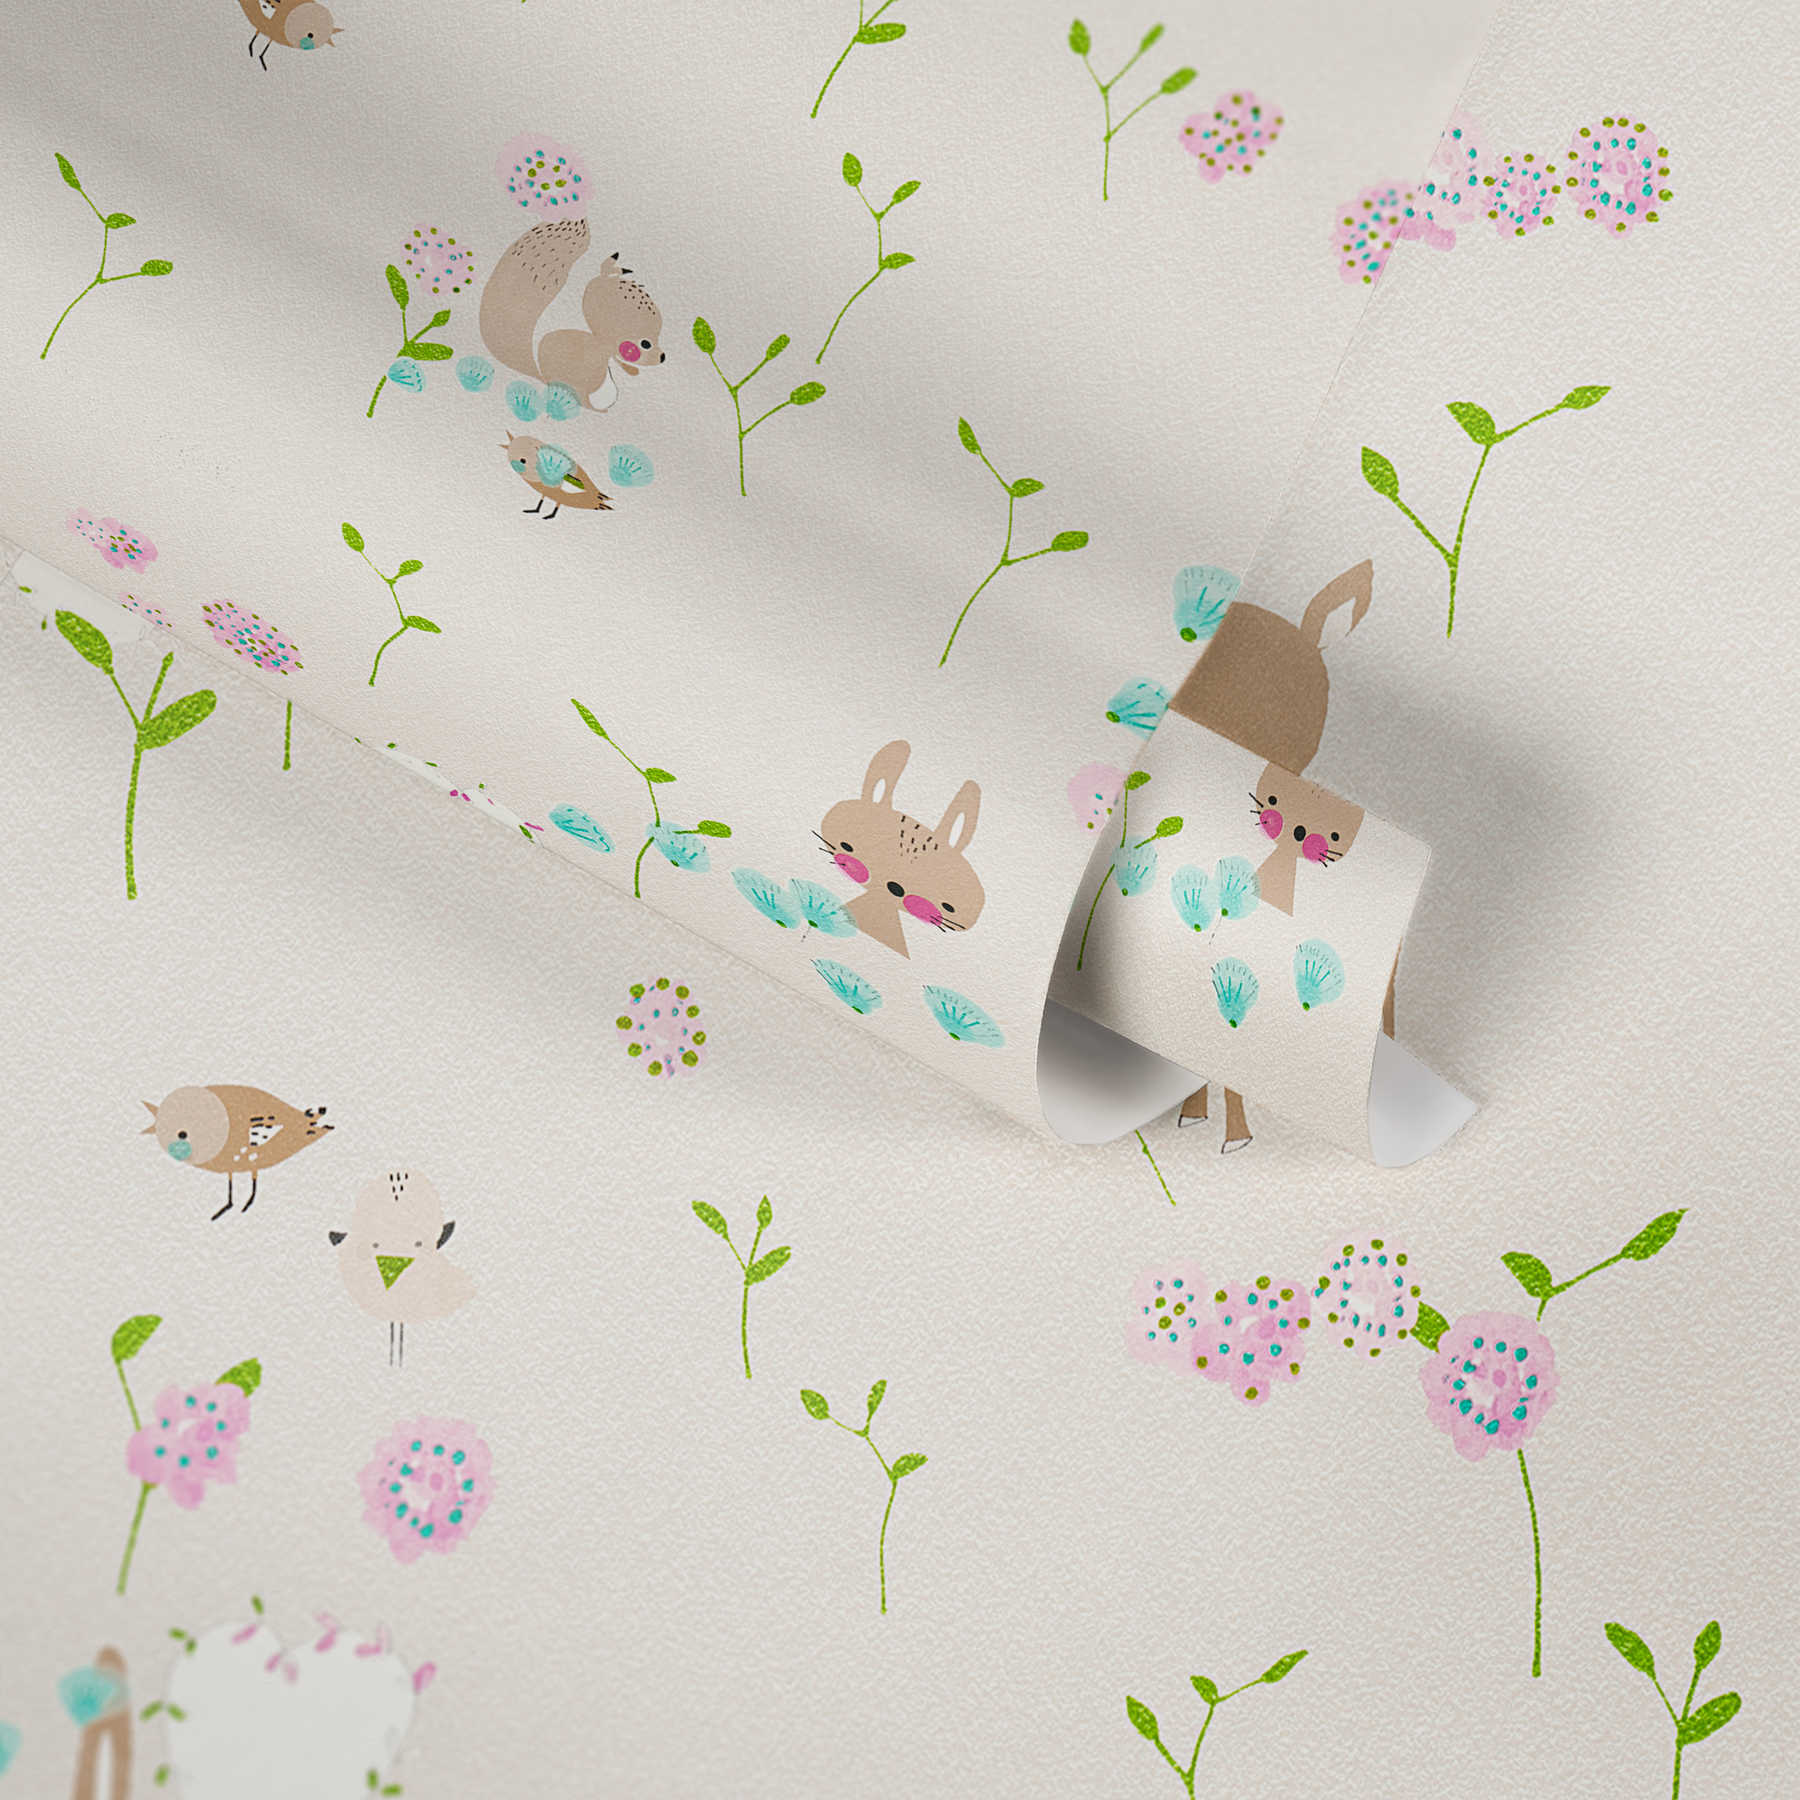             Children wallpaper with forest animals rabbit, deer & squirrel - beige, brown
        